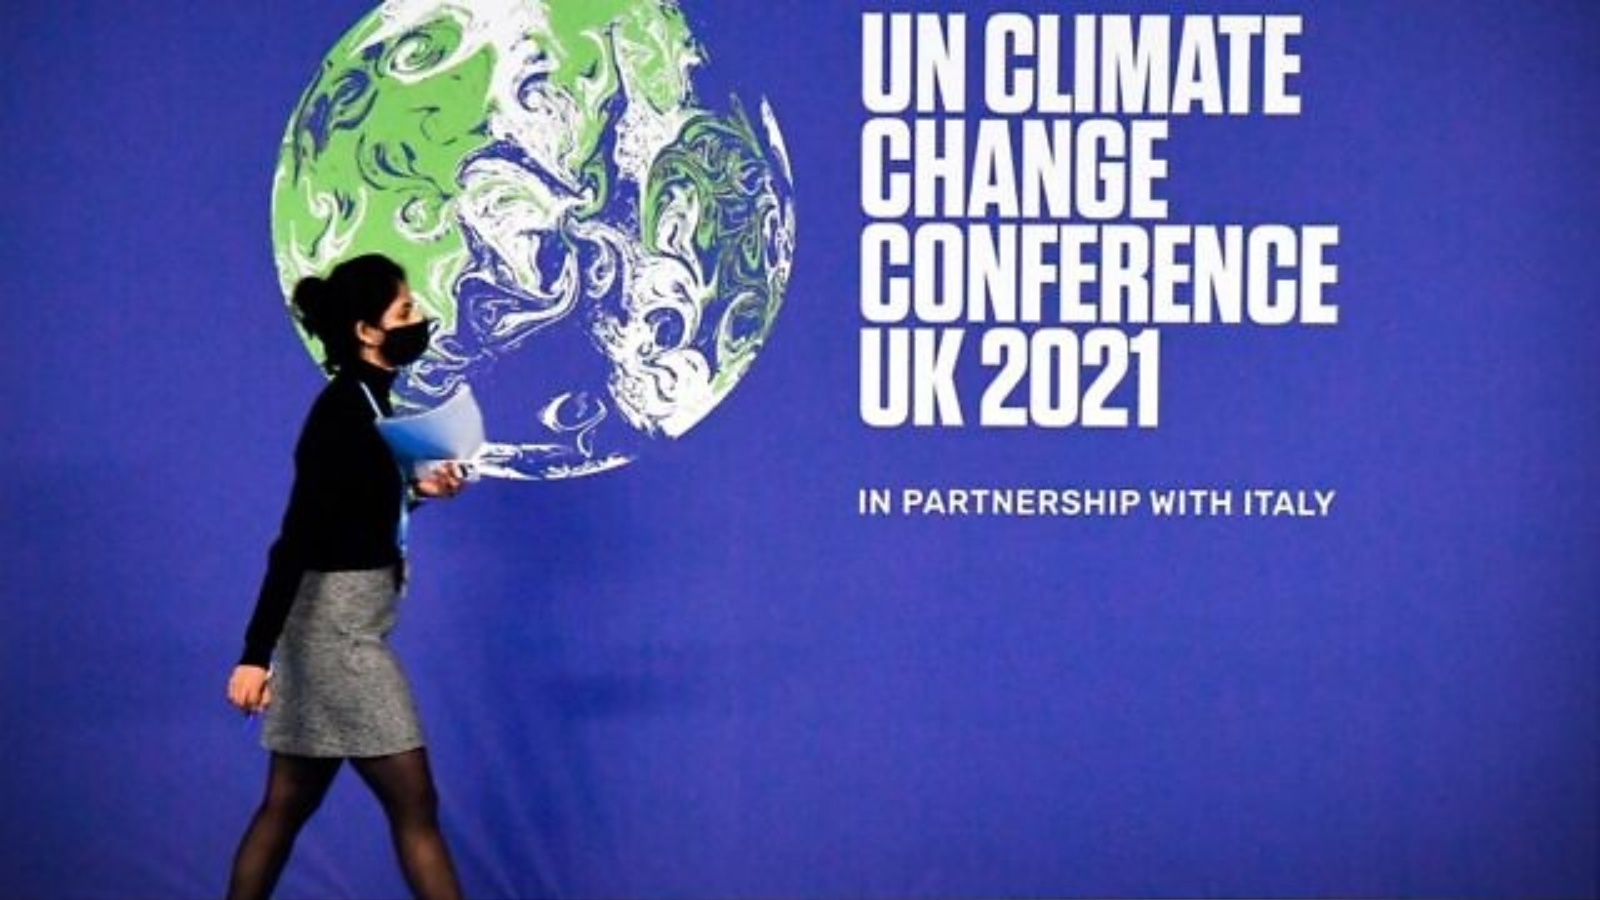 إحدى المشاركين تمر بجوار ملصق مؤتمر الأمم المتحدة لتغير المناخ كوب26 في اليوم الأول من المؤتمر في الحرم الجامعي للحدث الاسكتلندي (SEC) في غلاسكو، اسكتلندا. في 31 تشرين الأول/أكتوبر 2021.